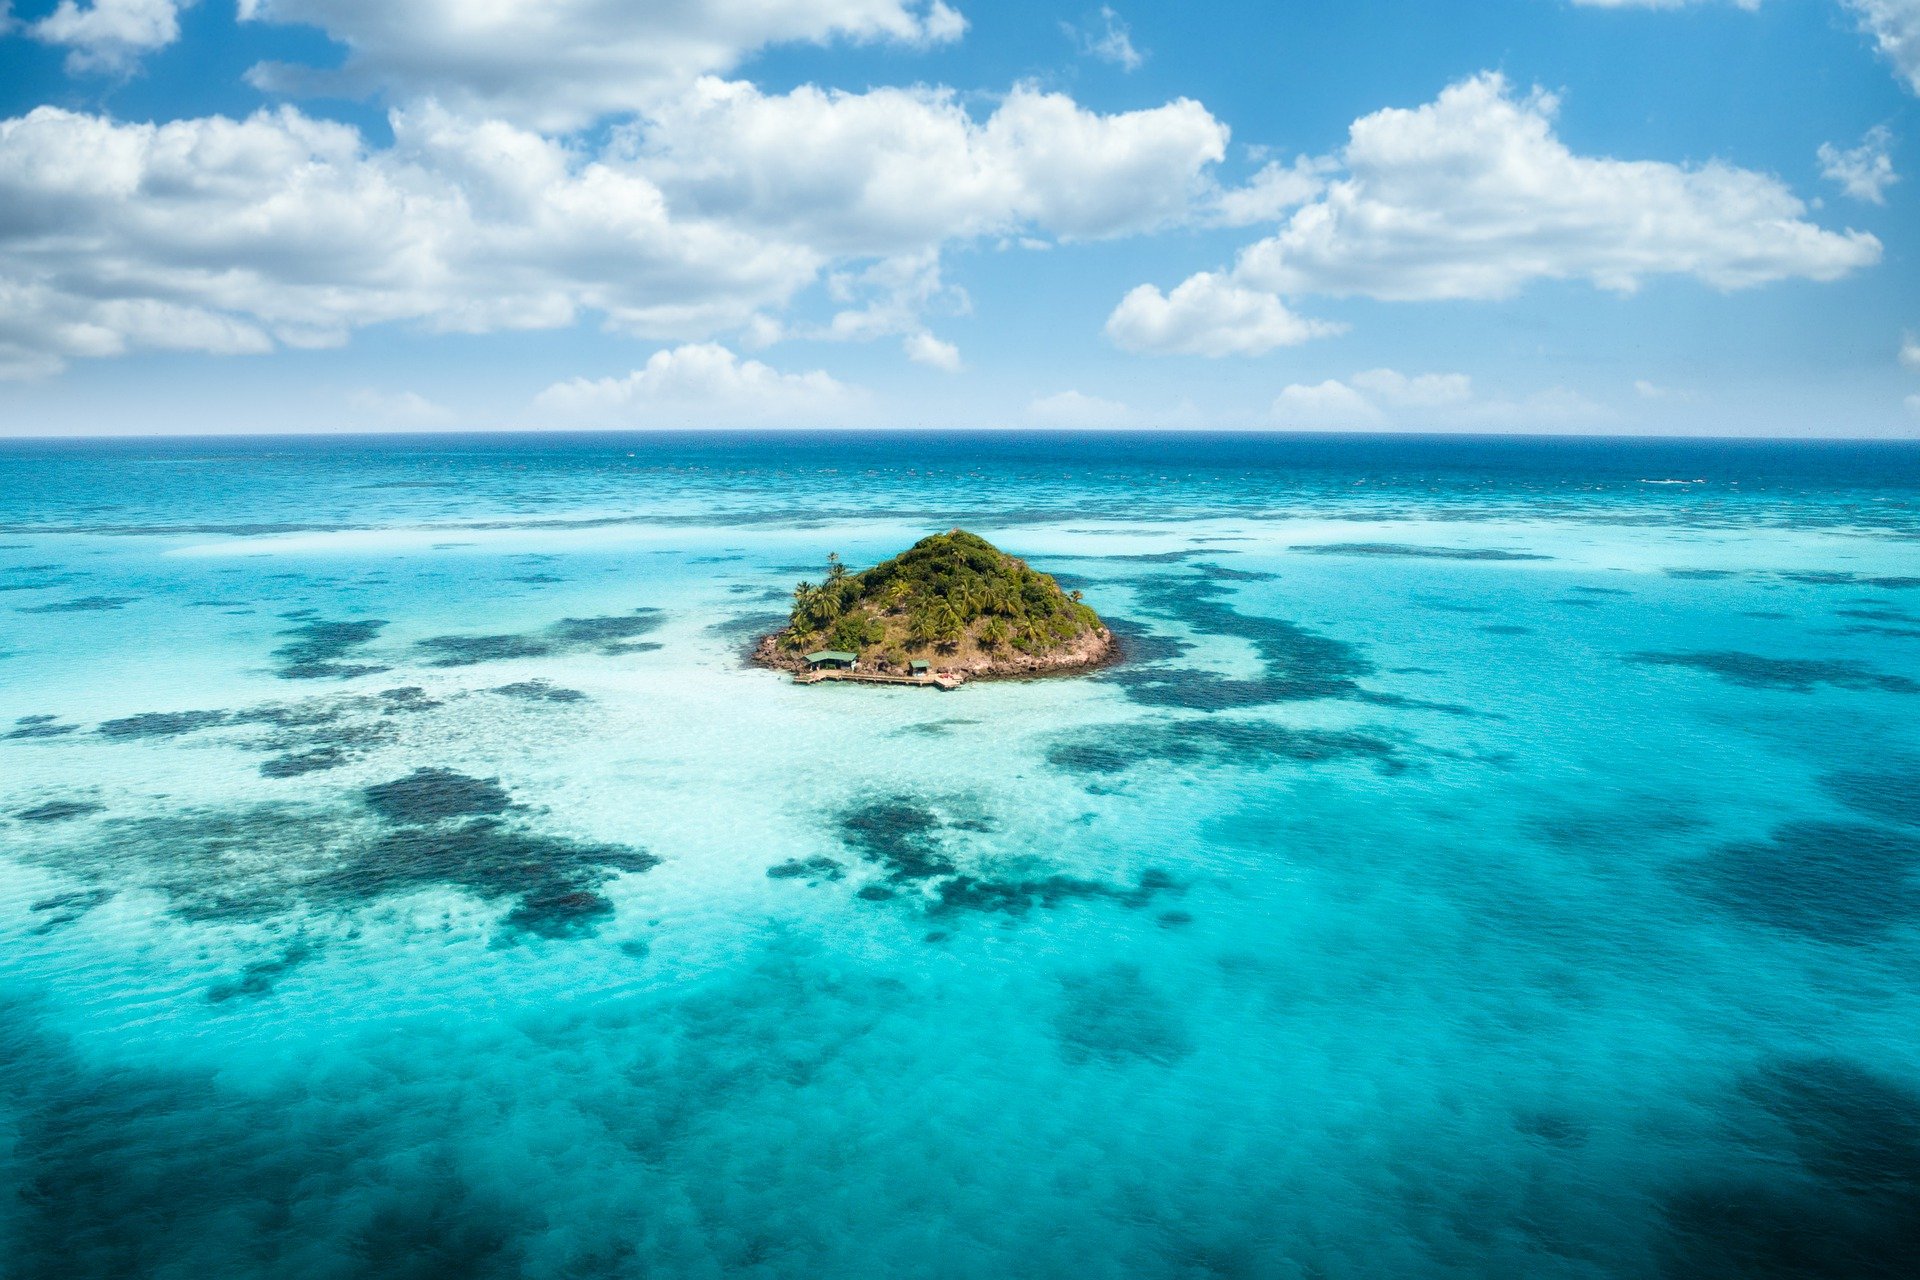 Una isla en medio del océano de aguas azul turquesa.